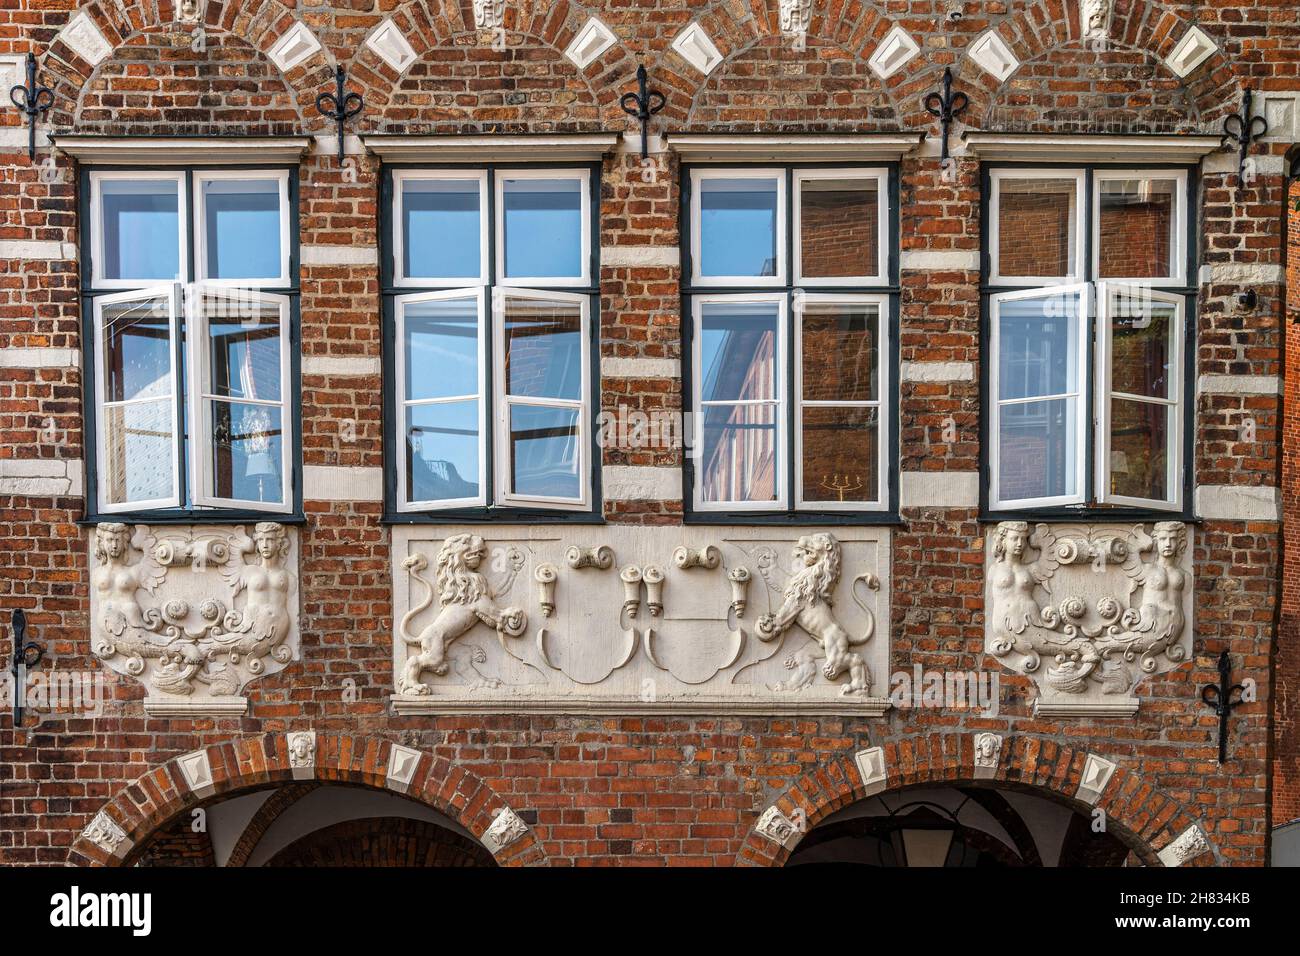 Detalles decorativos de la fachada de un edificio medieval en el centro histórico de Lübeck. Lübeck, Alemania, Europa Foto de stock